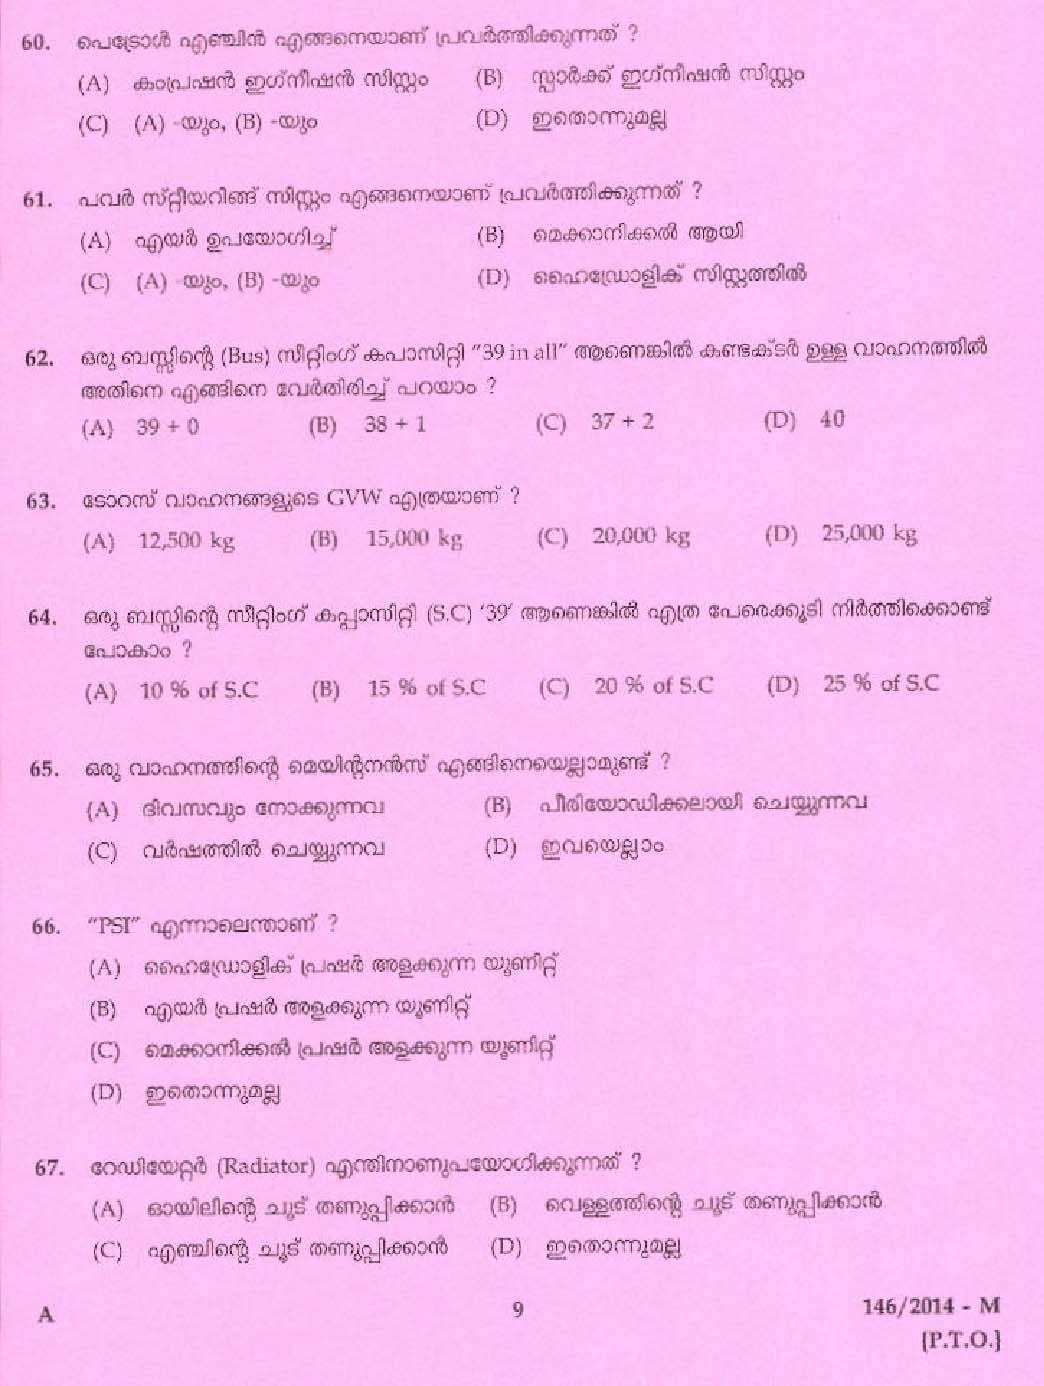 Kerala PSC Driver Grade II Exam 2014 Question Paper Code 1462014 M 7